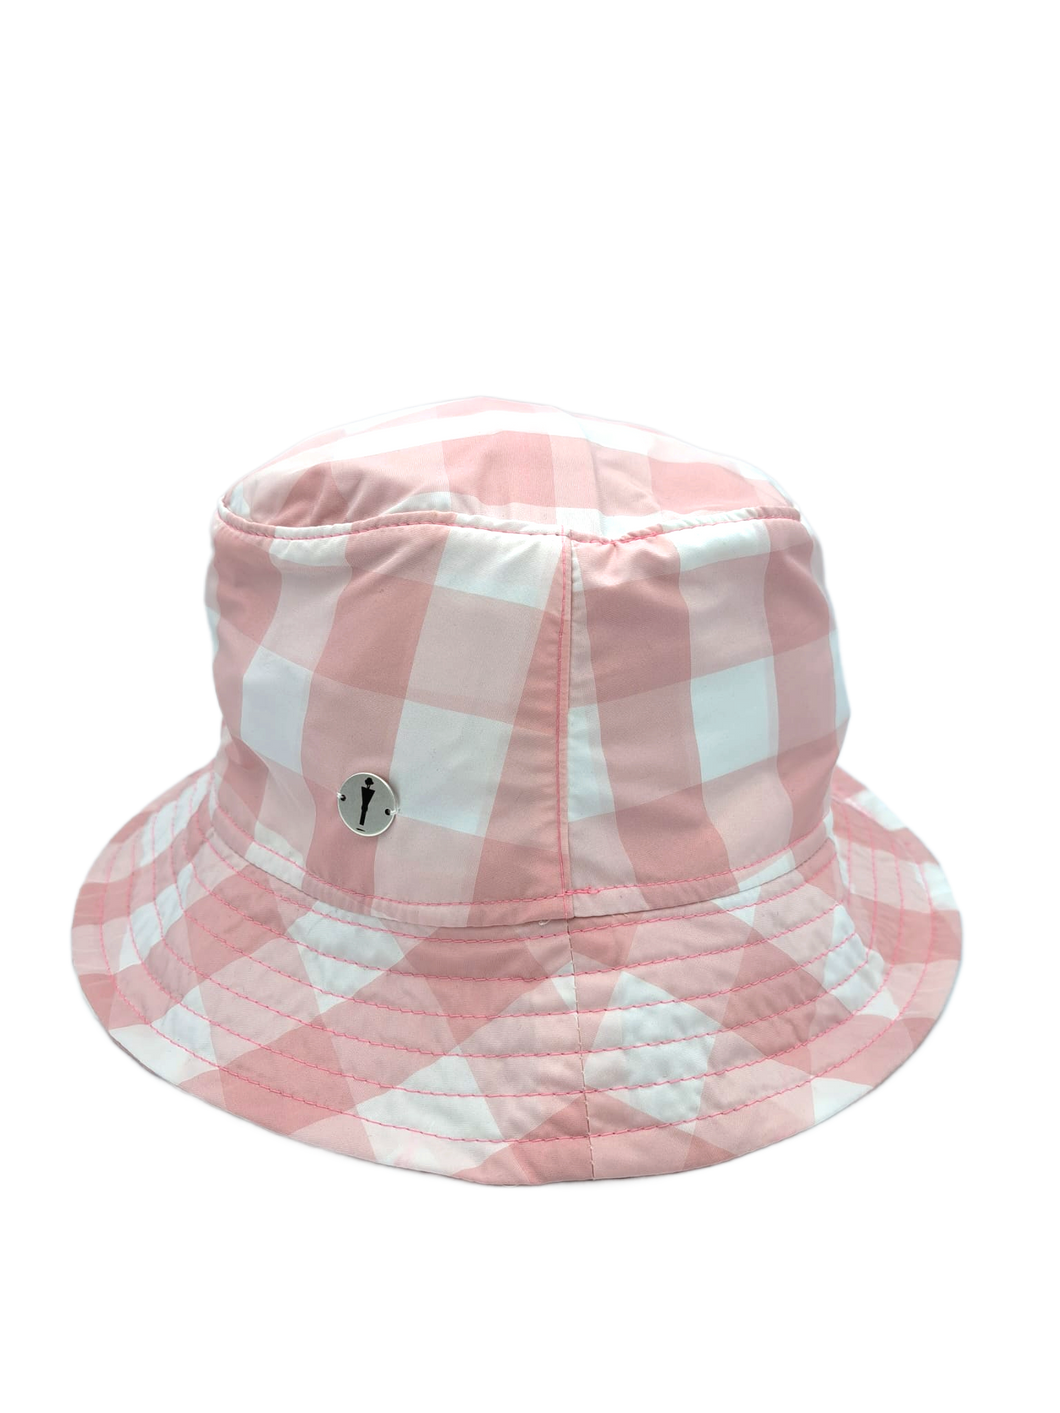 cappello bucket hat ripiegabile del brand Accapofitto. Tessuto a quadri bianchi e rosa